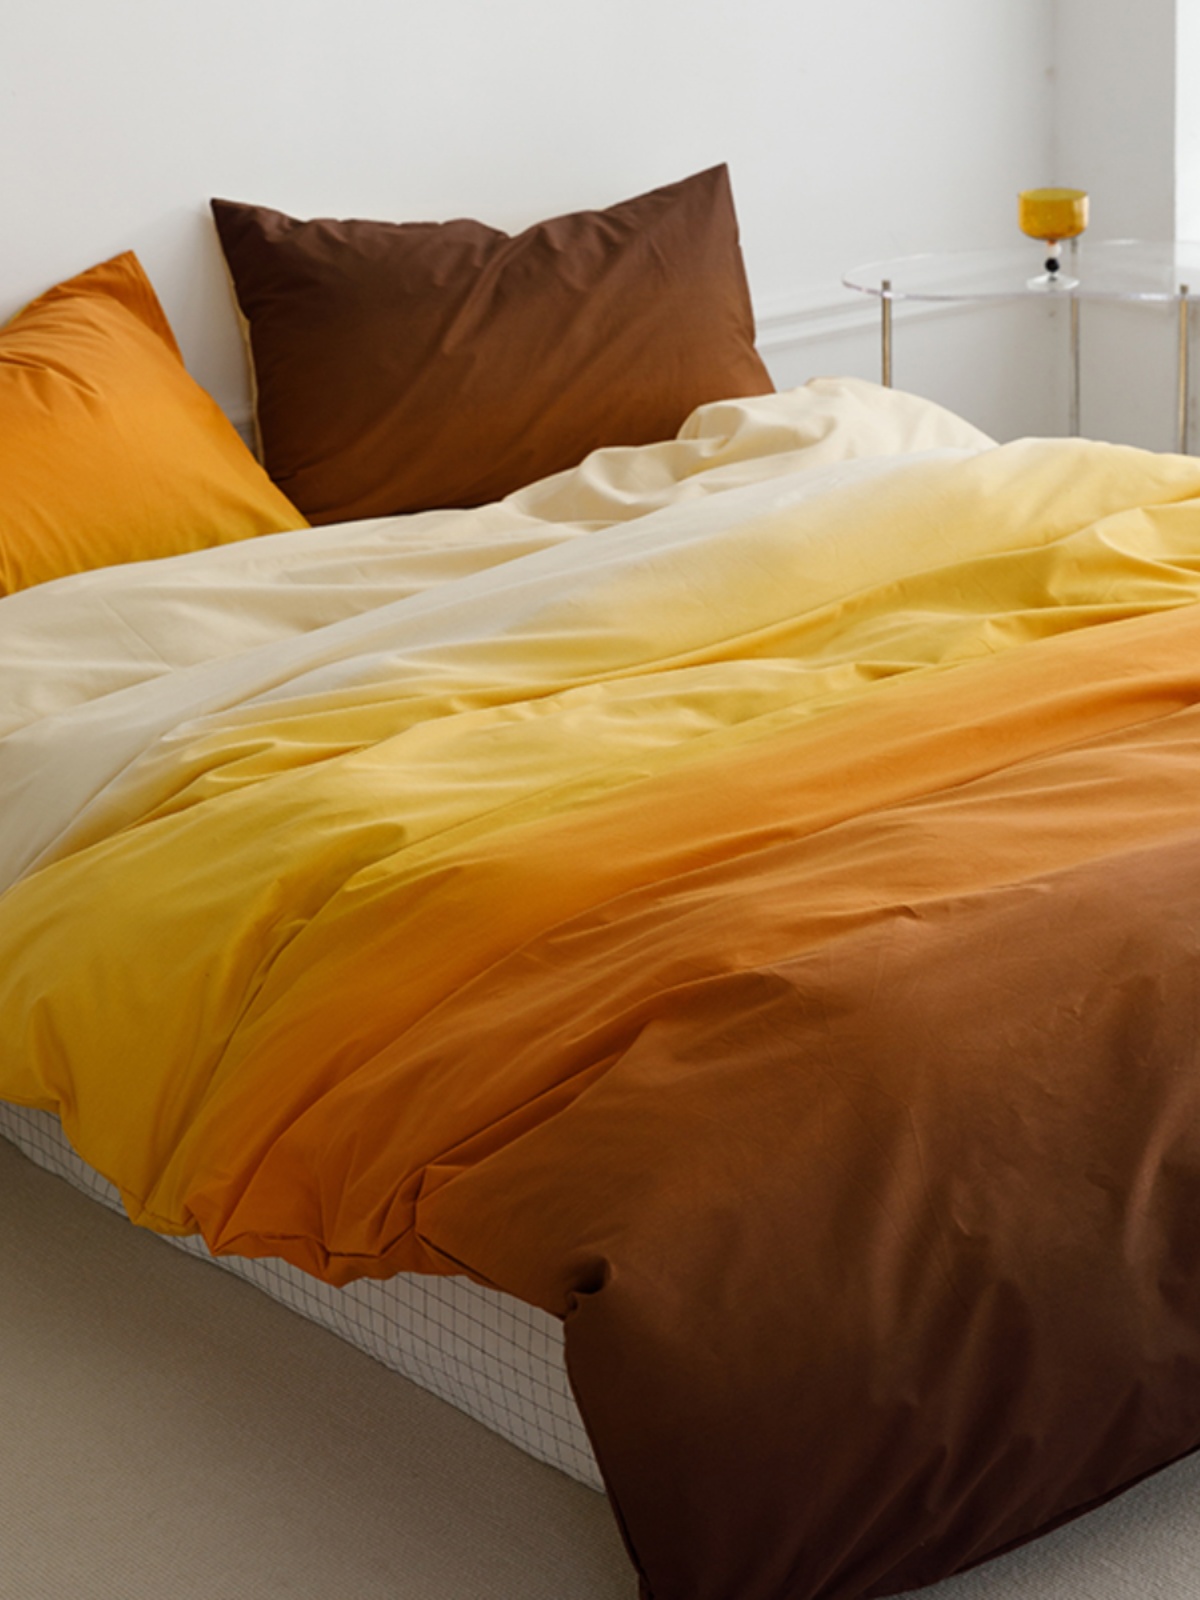 簡約風格純棉四件套親膚舒適多種尺寸顏色可選適合單人床或宿舍使用